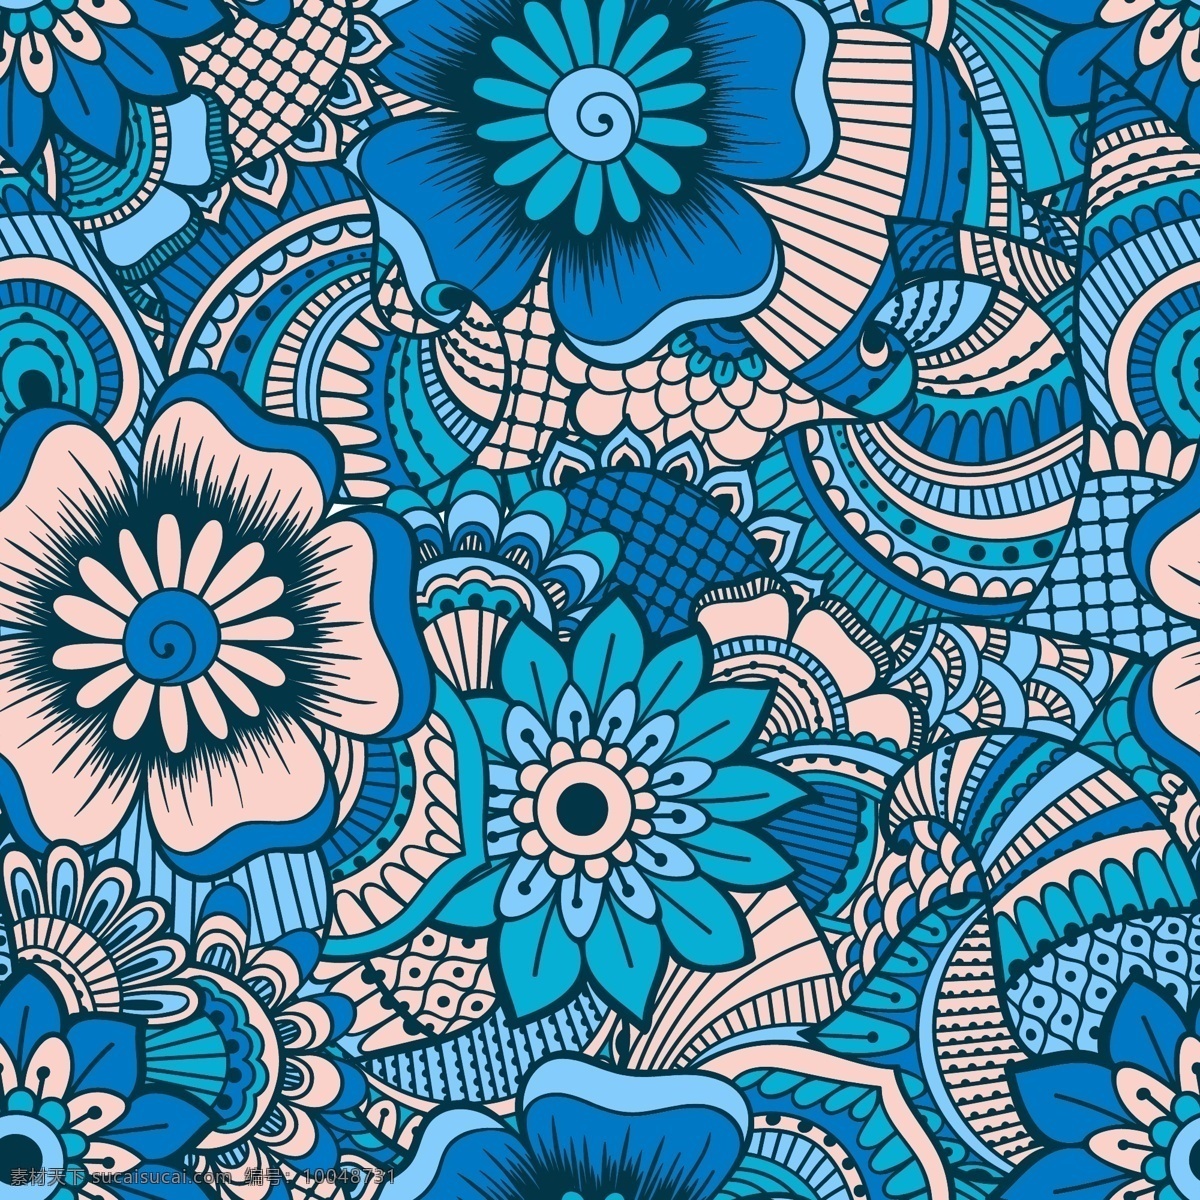 蓝色 时尚 艺术 纹理 花朵 叶子 植物